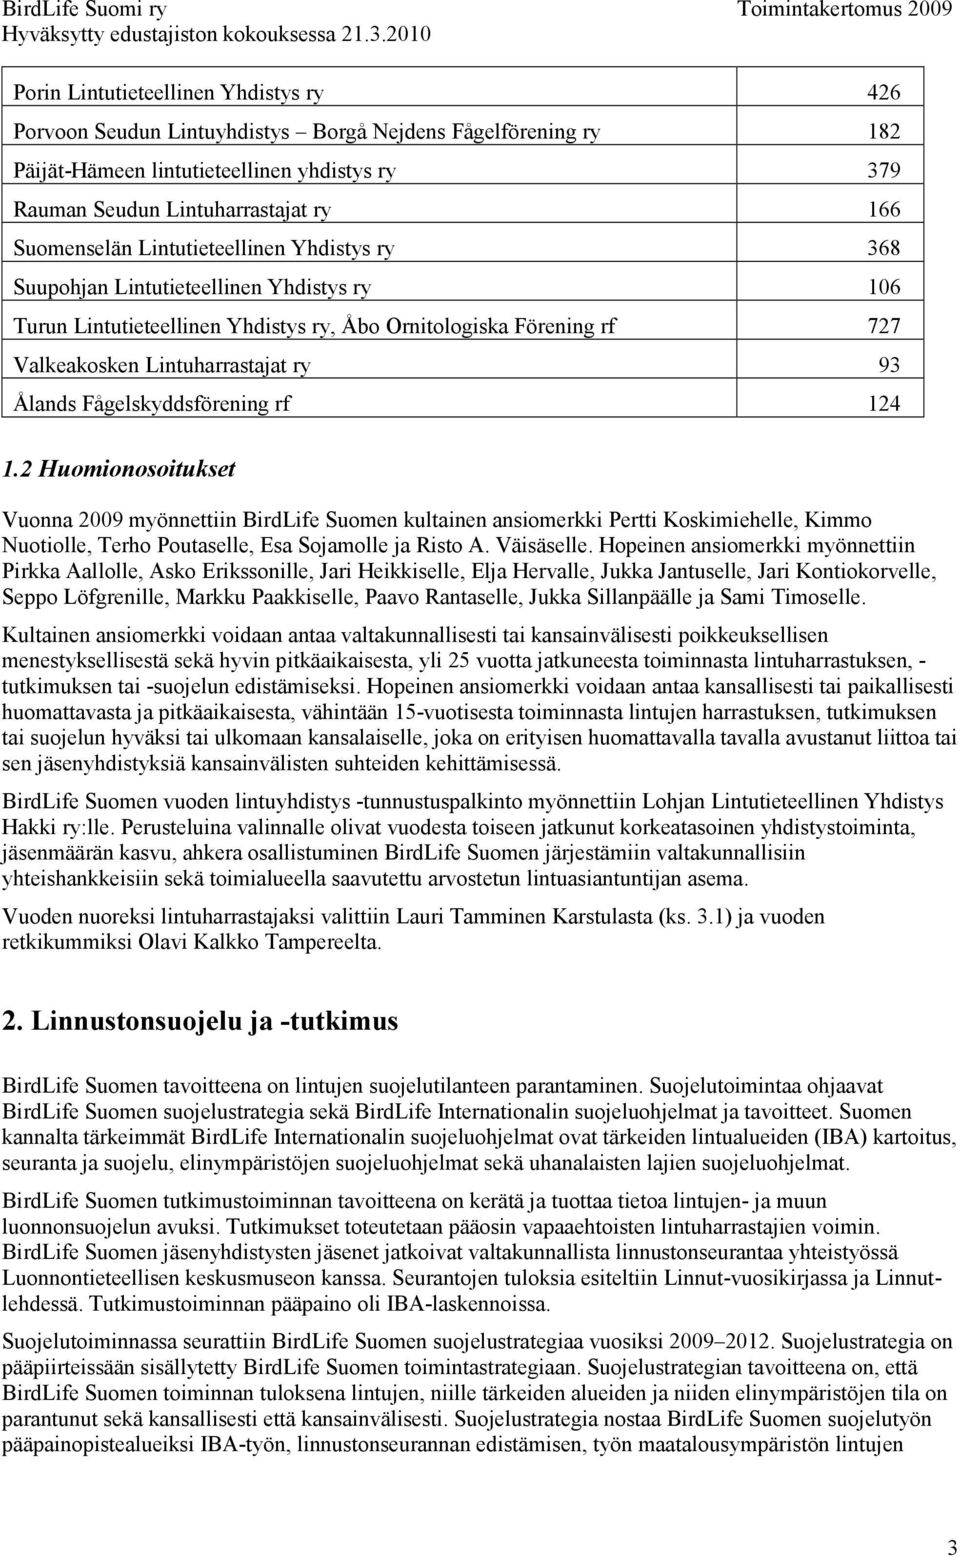 Ålands Fågelskyddsförening rf 124 1.2 Huomionosoitukset Vuonna 2009 myönnettiin BirdLife Suomen kultainen ansiomerkki Pertti Koskimiehelle, Kimmo Nuotiolle, Terho Poutaselle, Esa Sojamolle ja Risto A.